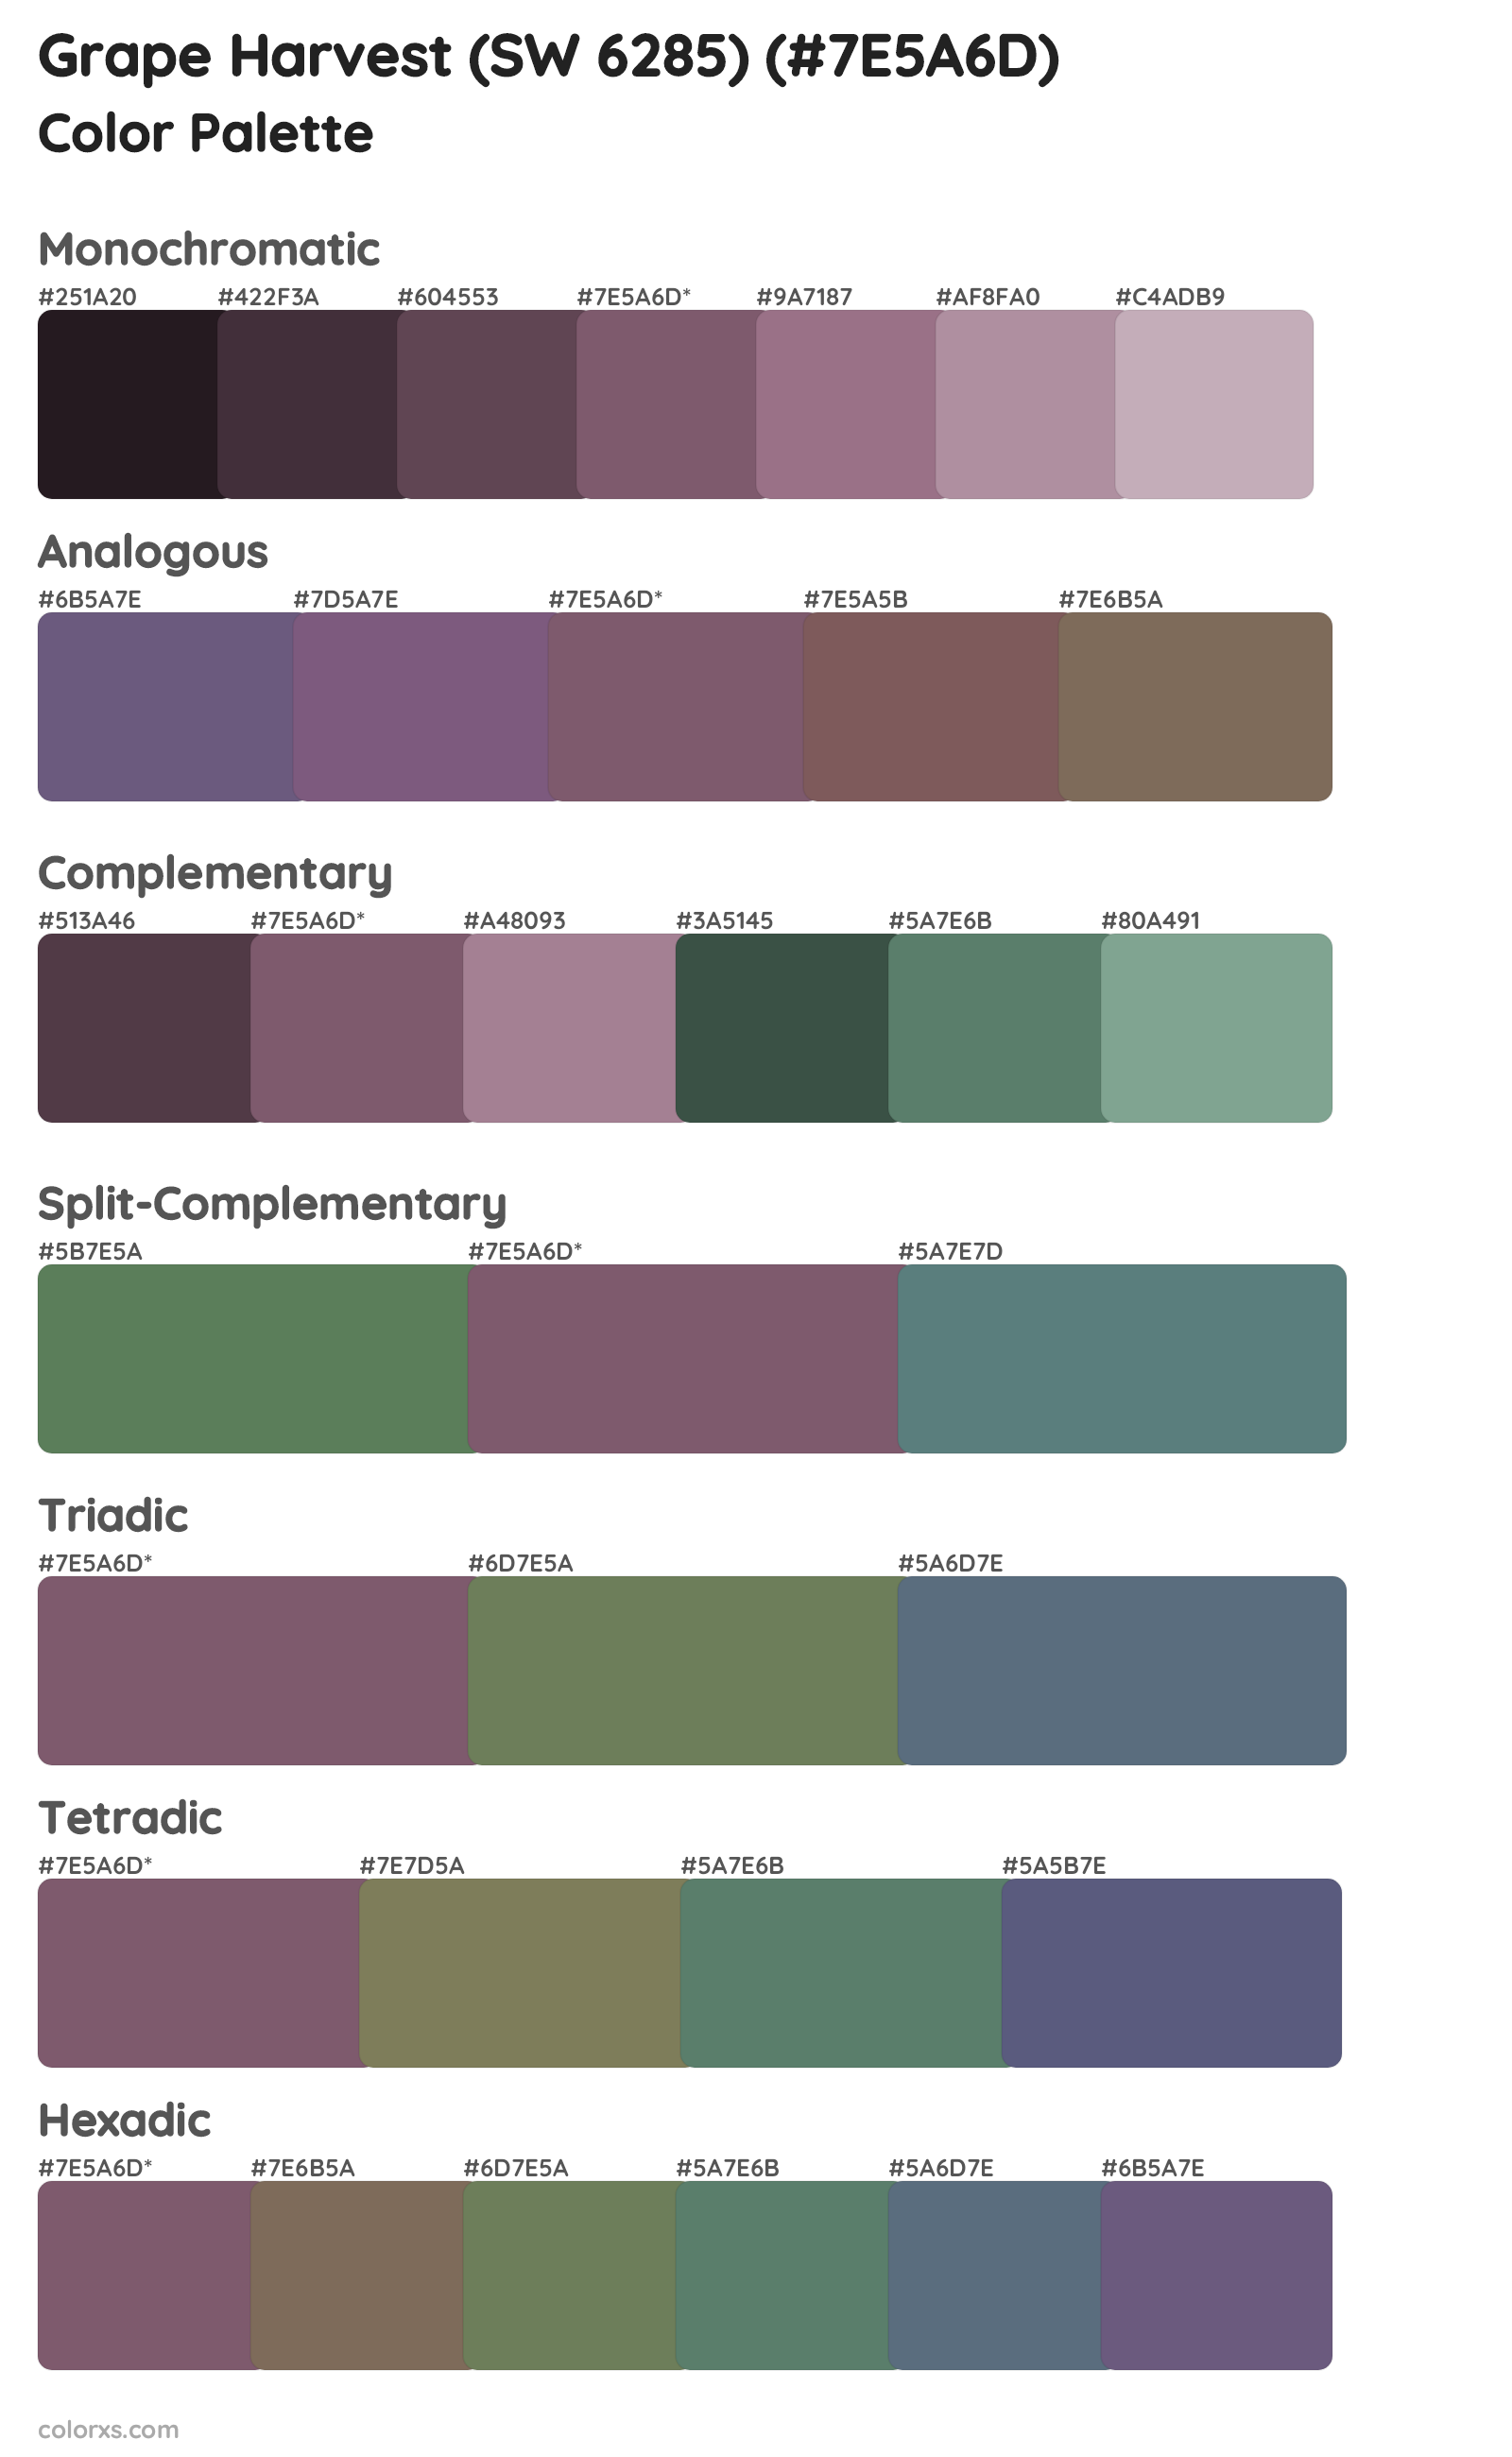 Grape Harvest (SW 6285) Color Scheme Palettes